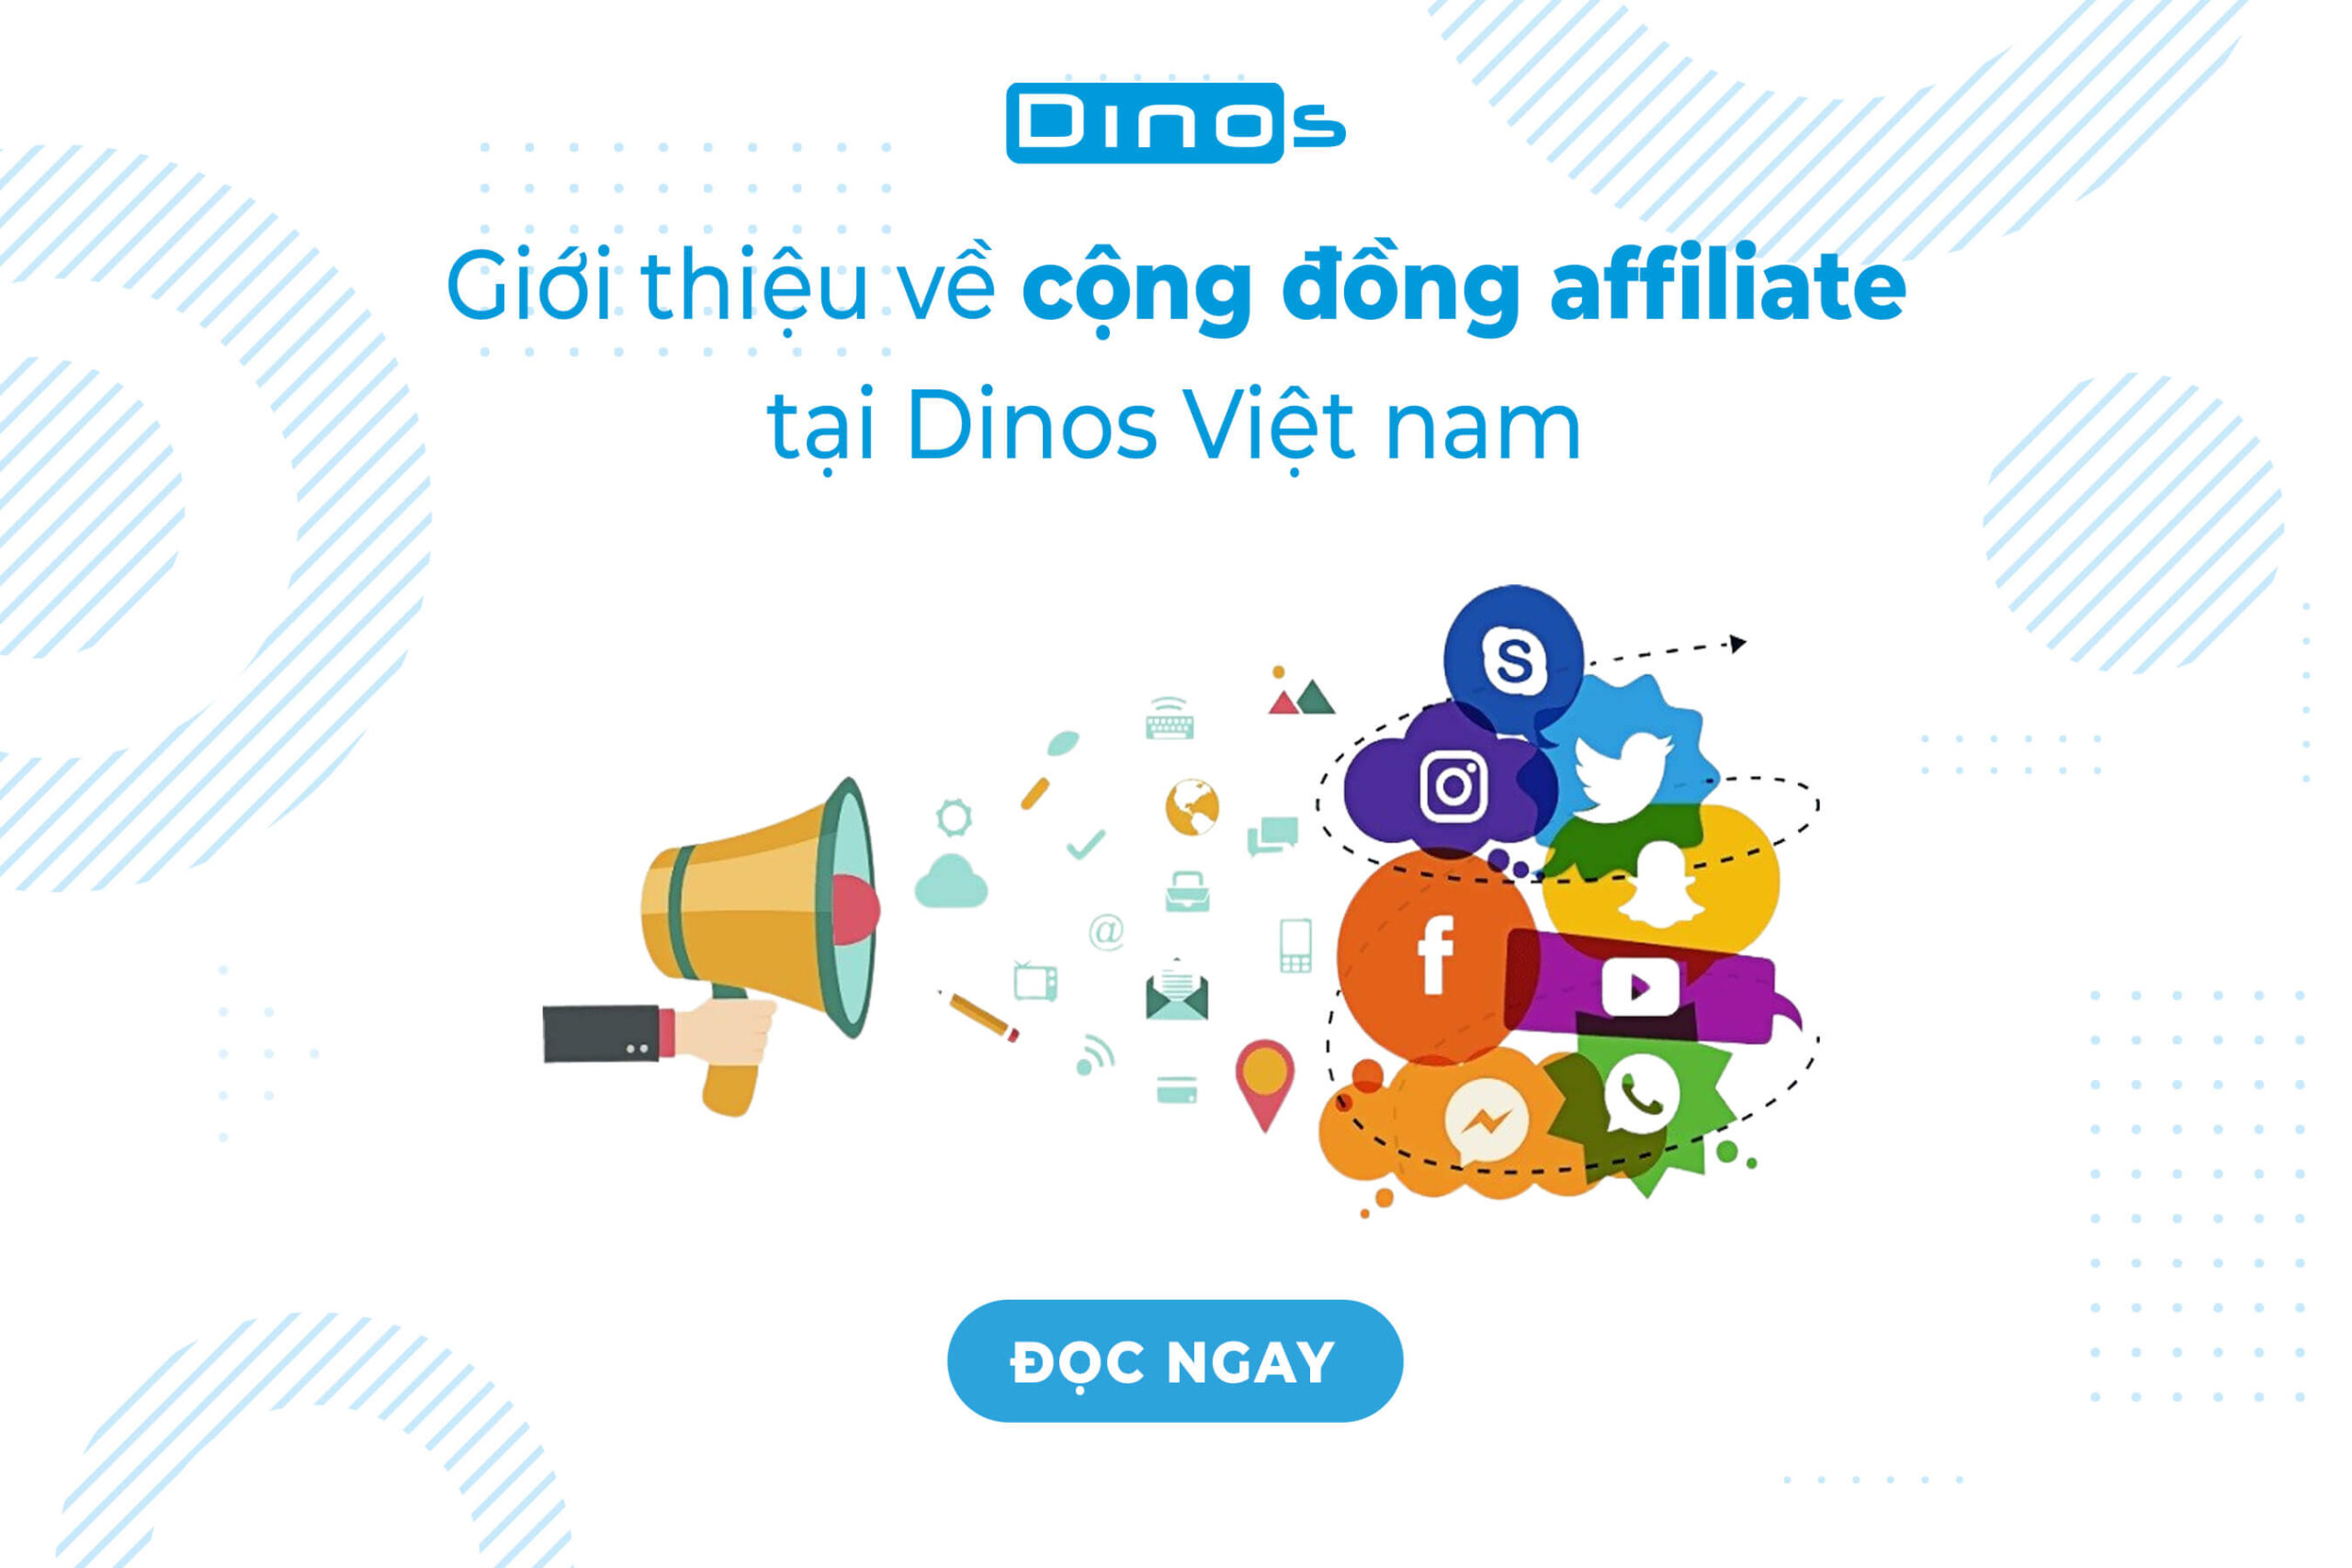 Giới thiệu về cộng đồng affiliate Dinos Việt nam